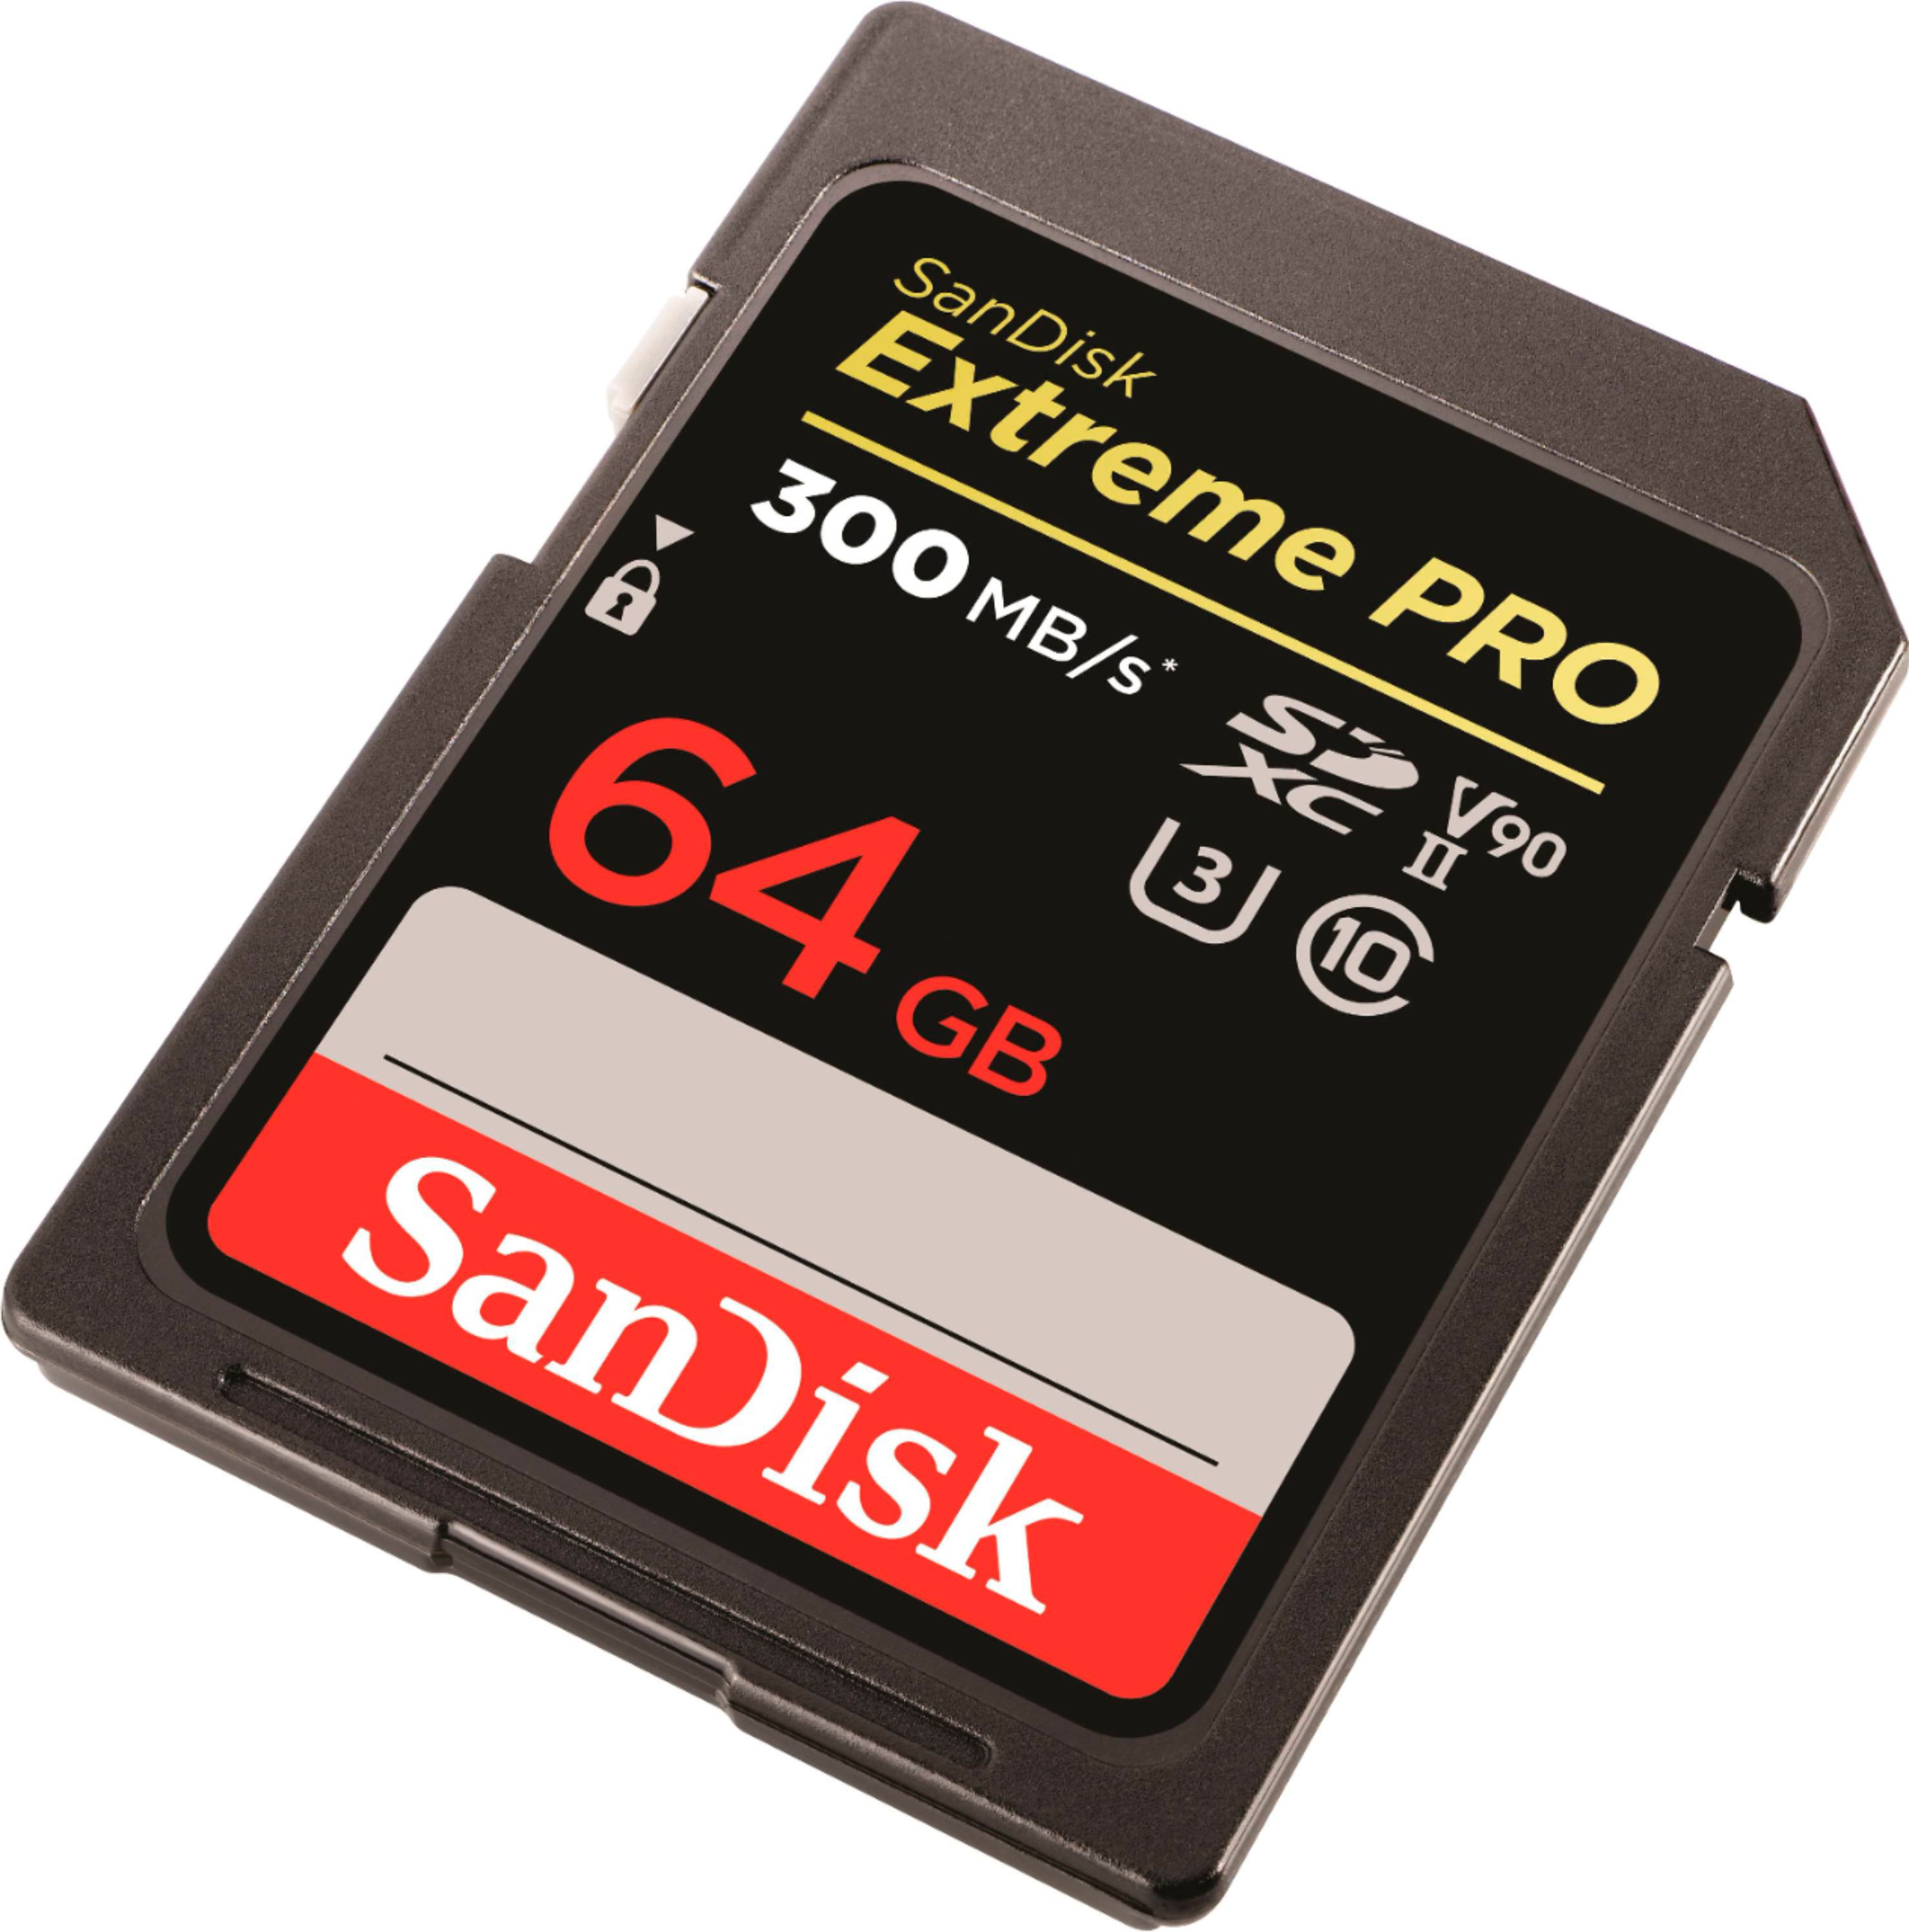 SANDISK SD EXTREME PRO 64GB (jusqu'à 200MB/S en lecture et 90MB/S